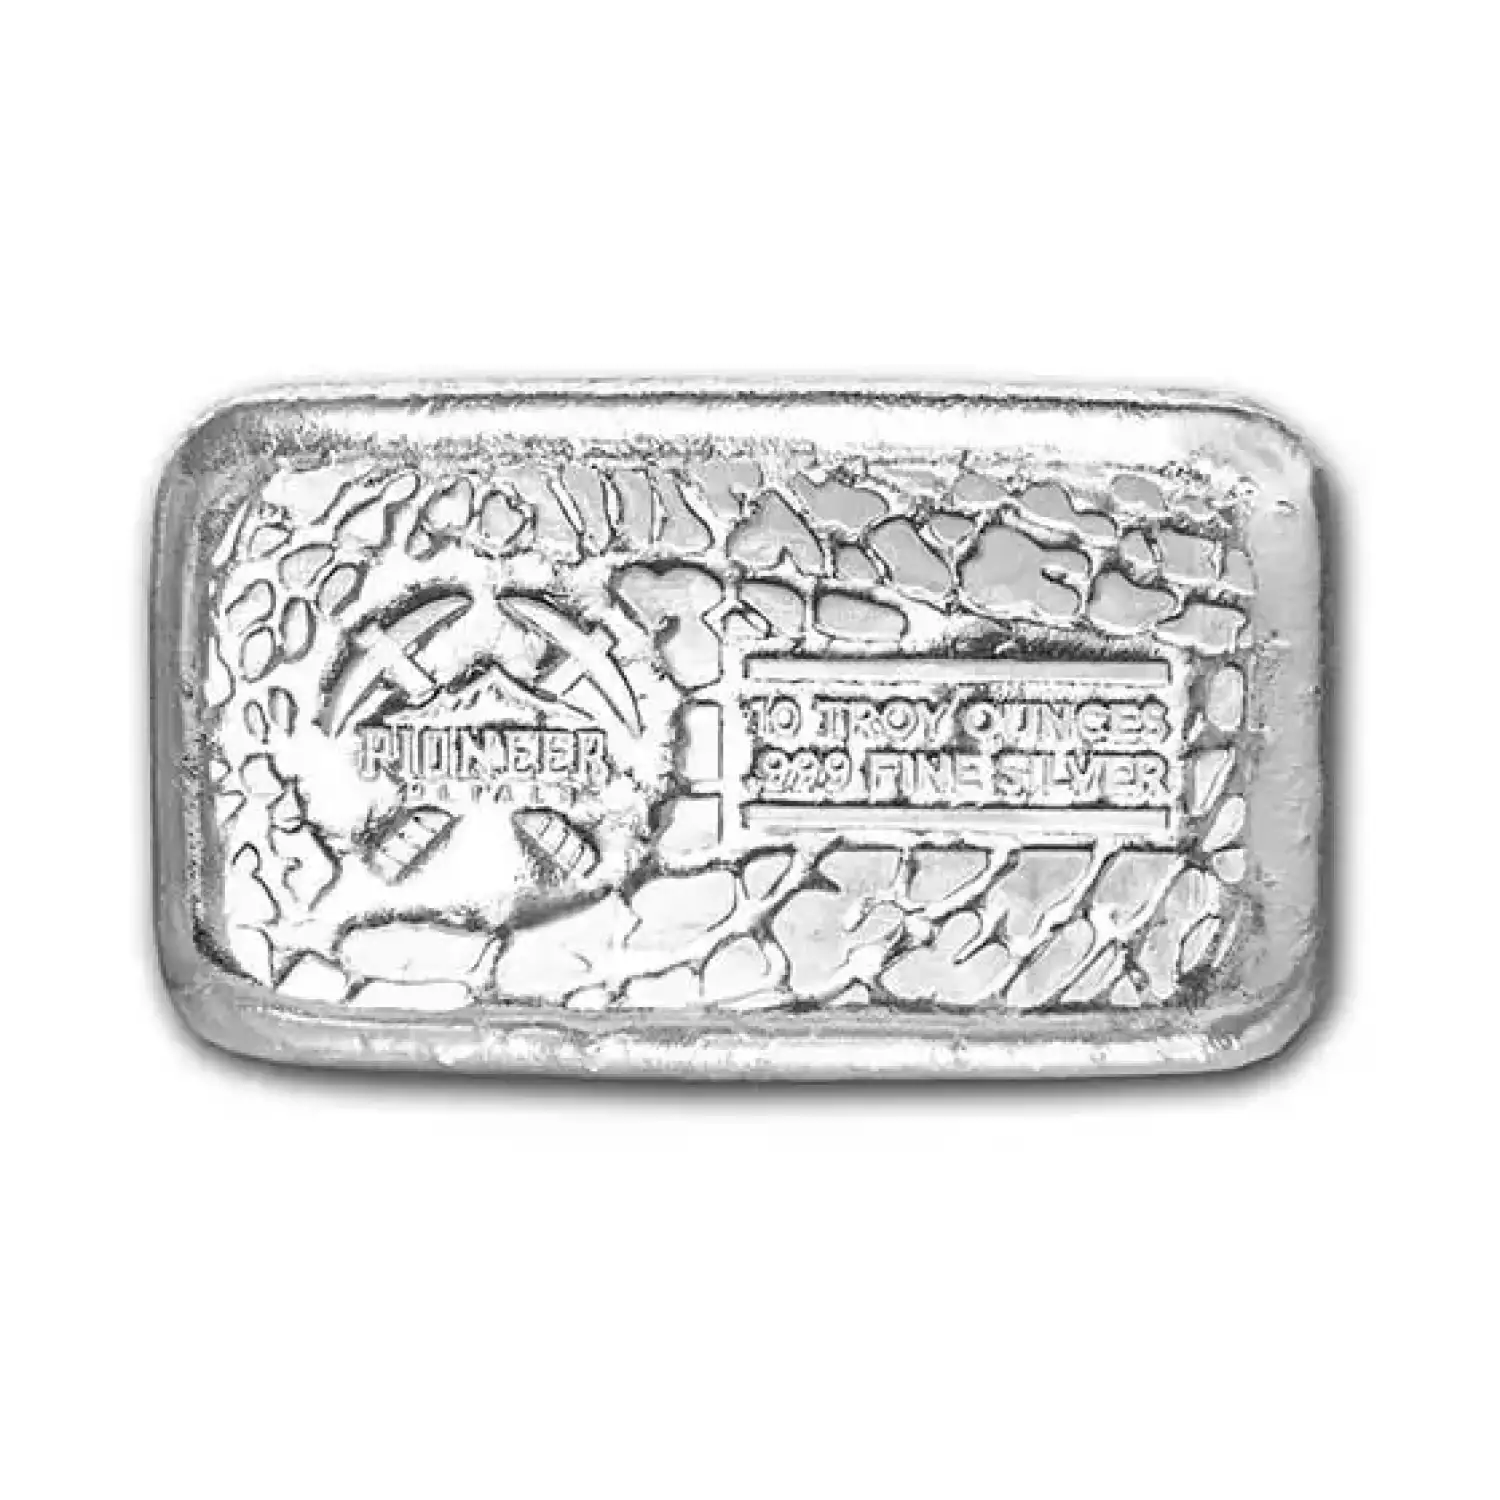 Pioneer Metals 10 oz Cast Silver Bar (2)